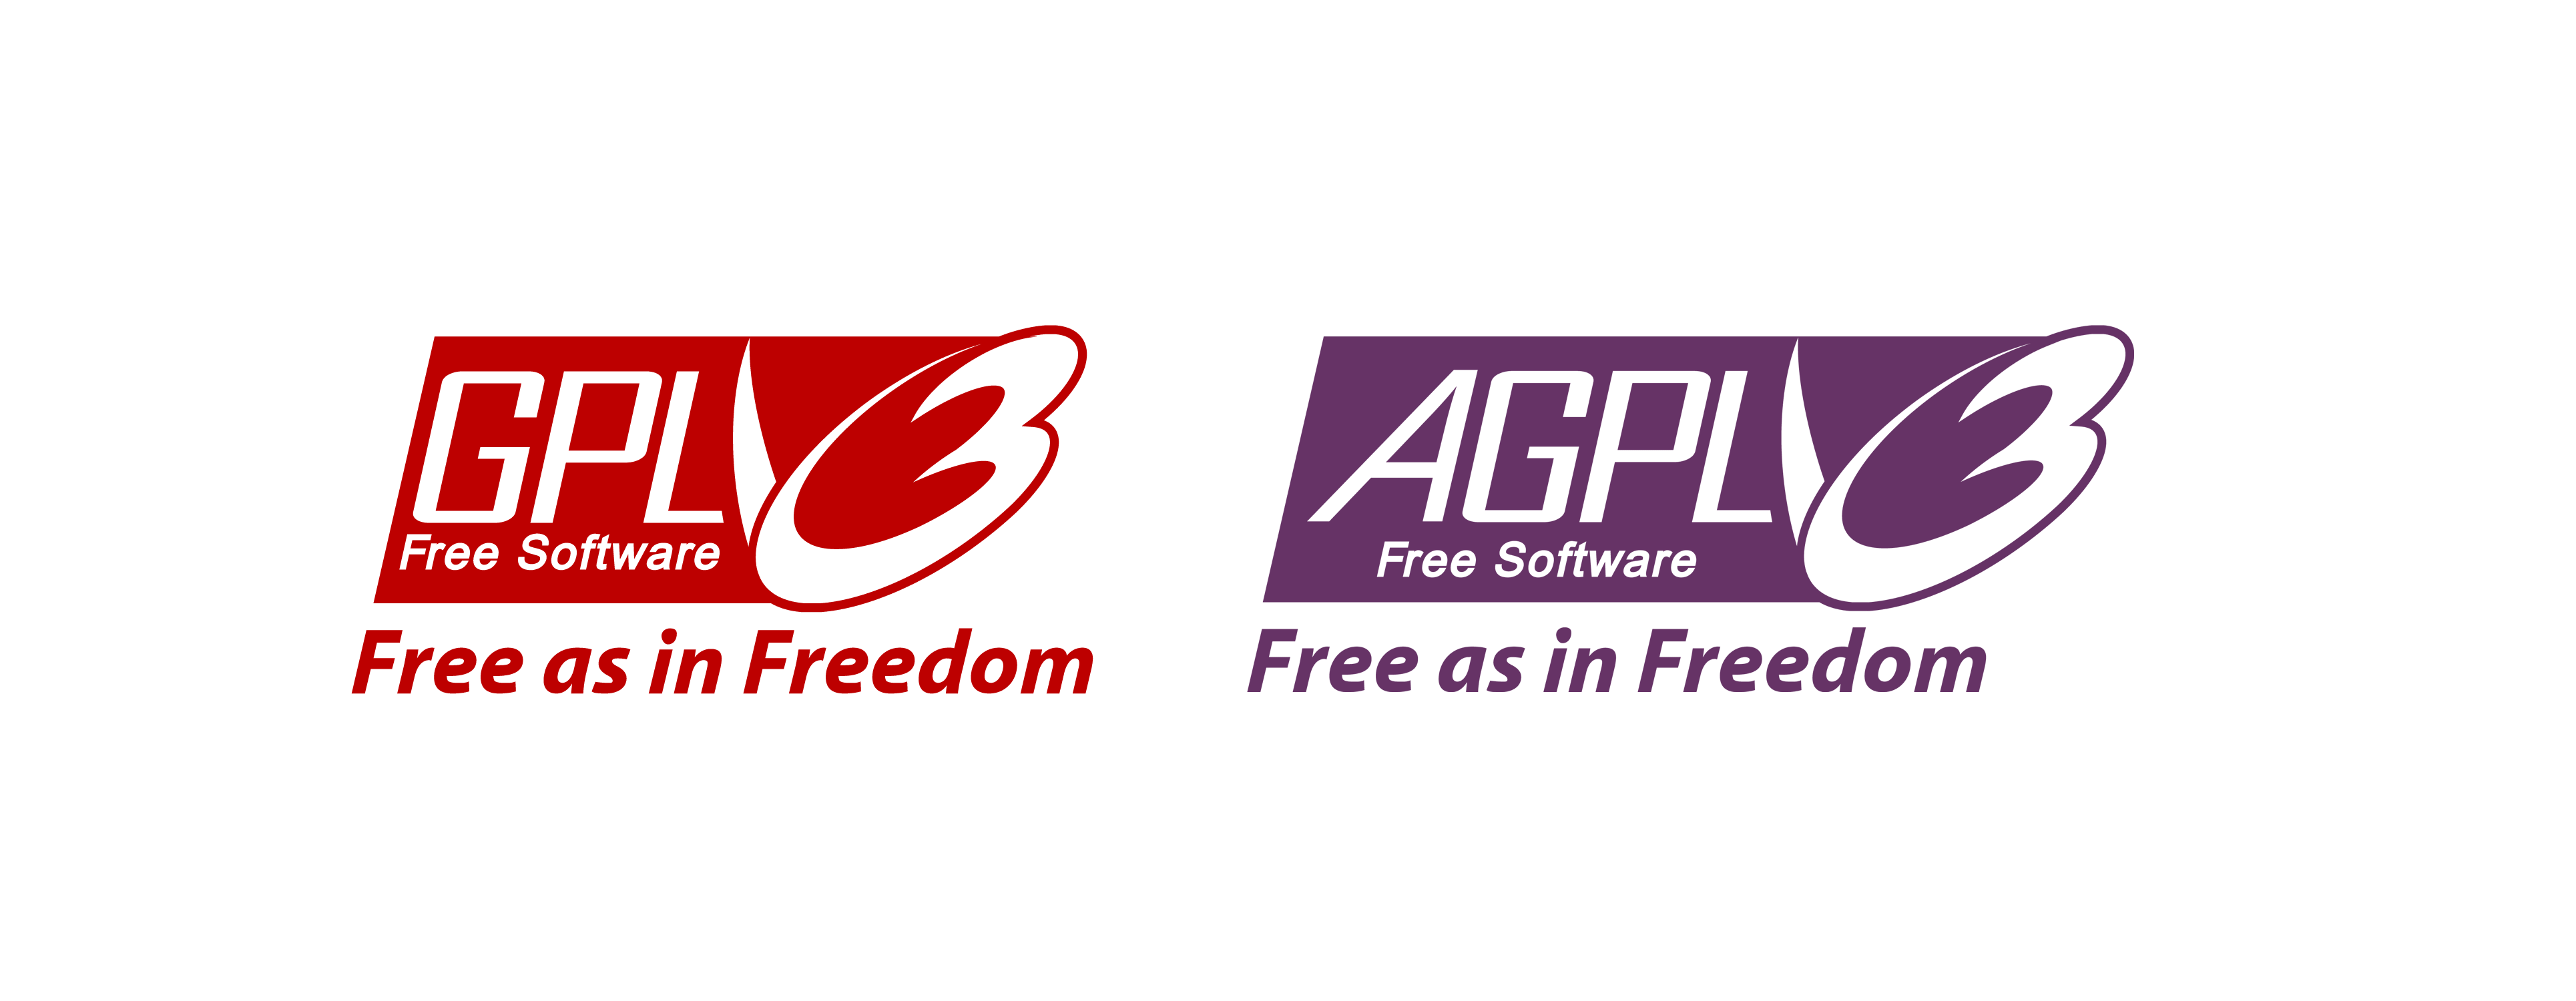 GPL and AGPL logos